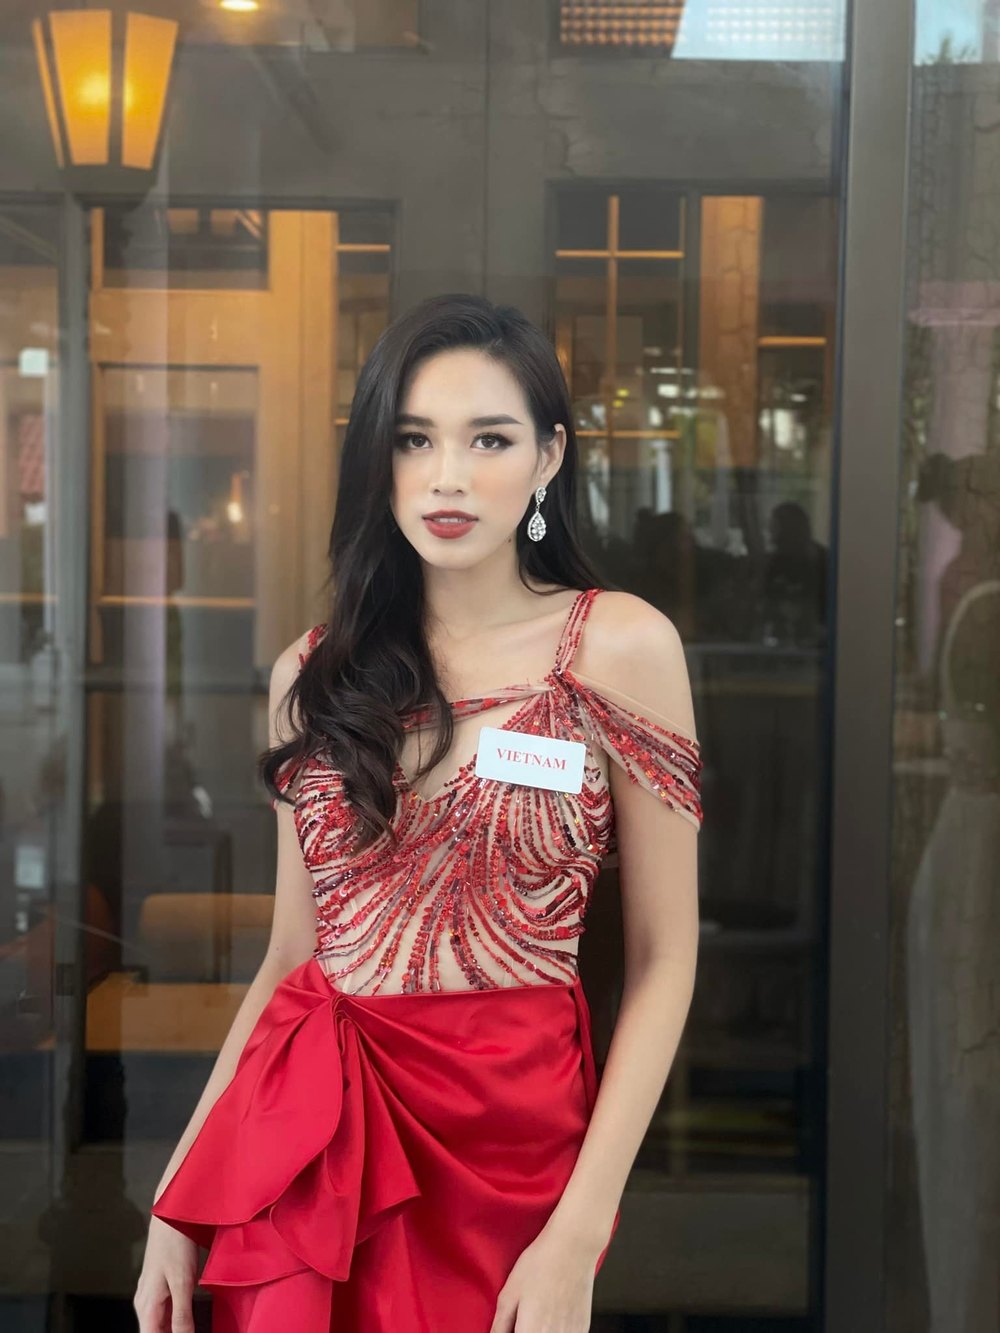  
Đỗ Thị Hà một mình lưu lại mọi khoảnh khắc, kỉ niệm khi đồng hành cùng Miss World 2021. - Tin sao Viet - Tin tuc sao Viet - Scandal sao Viet - Tin tuc cua Sao - Tin cua Sao